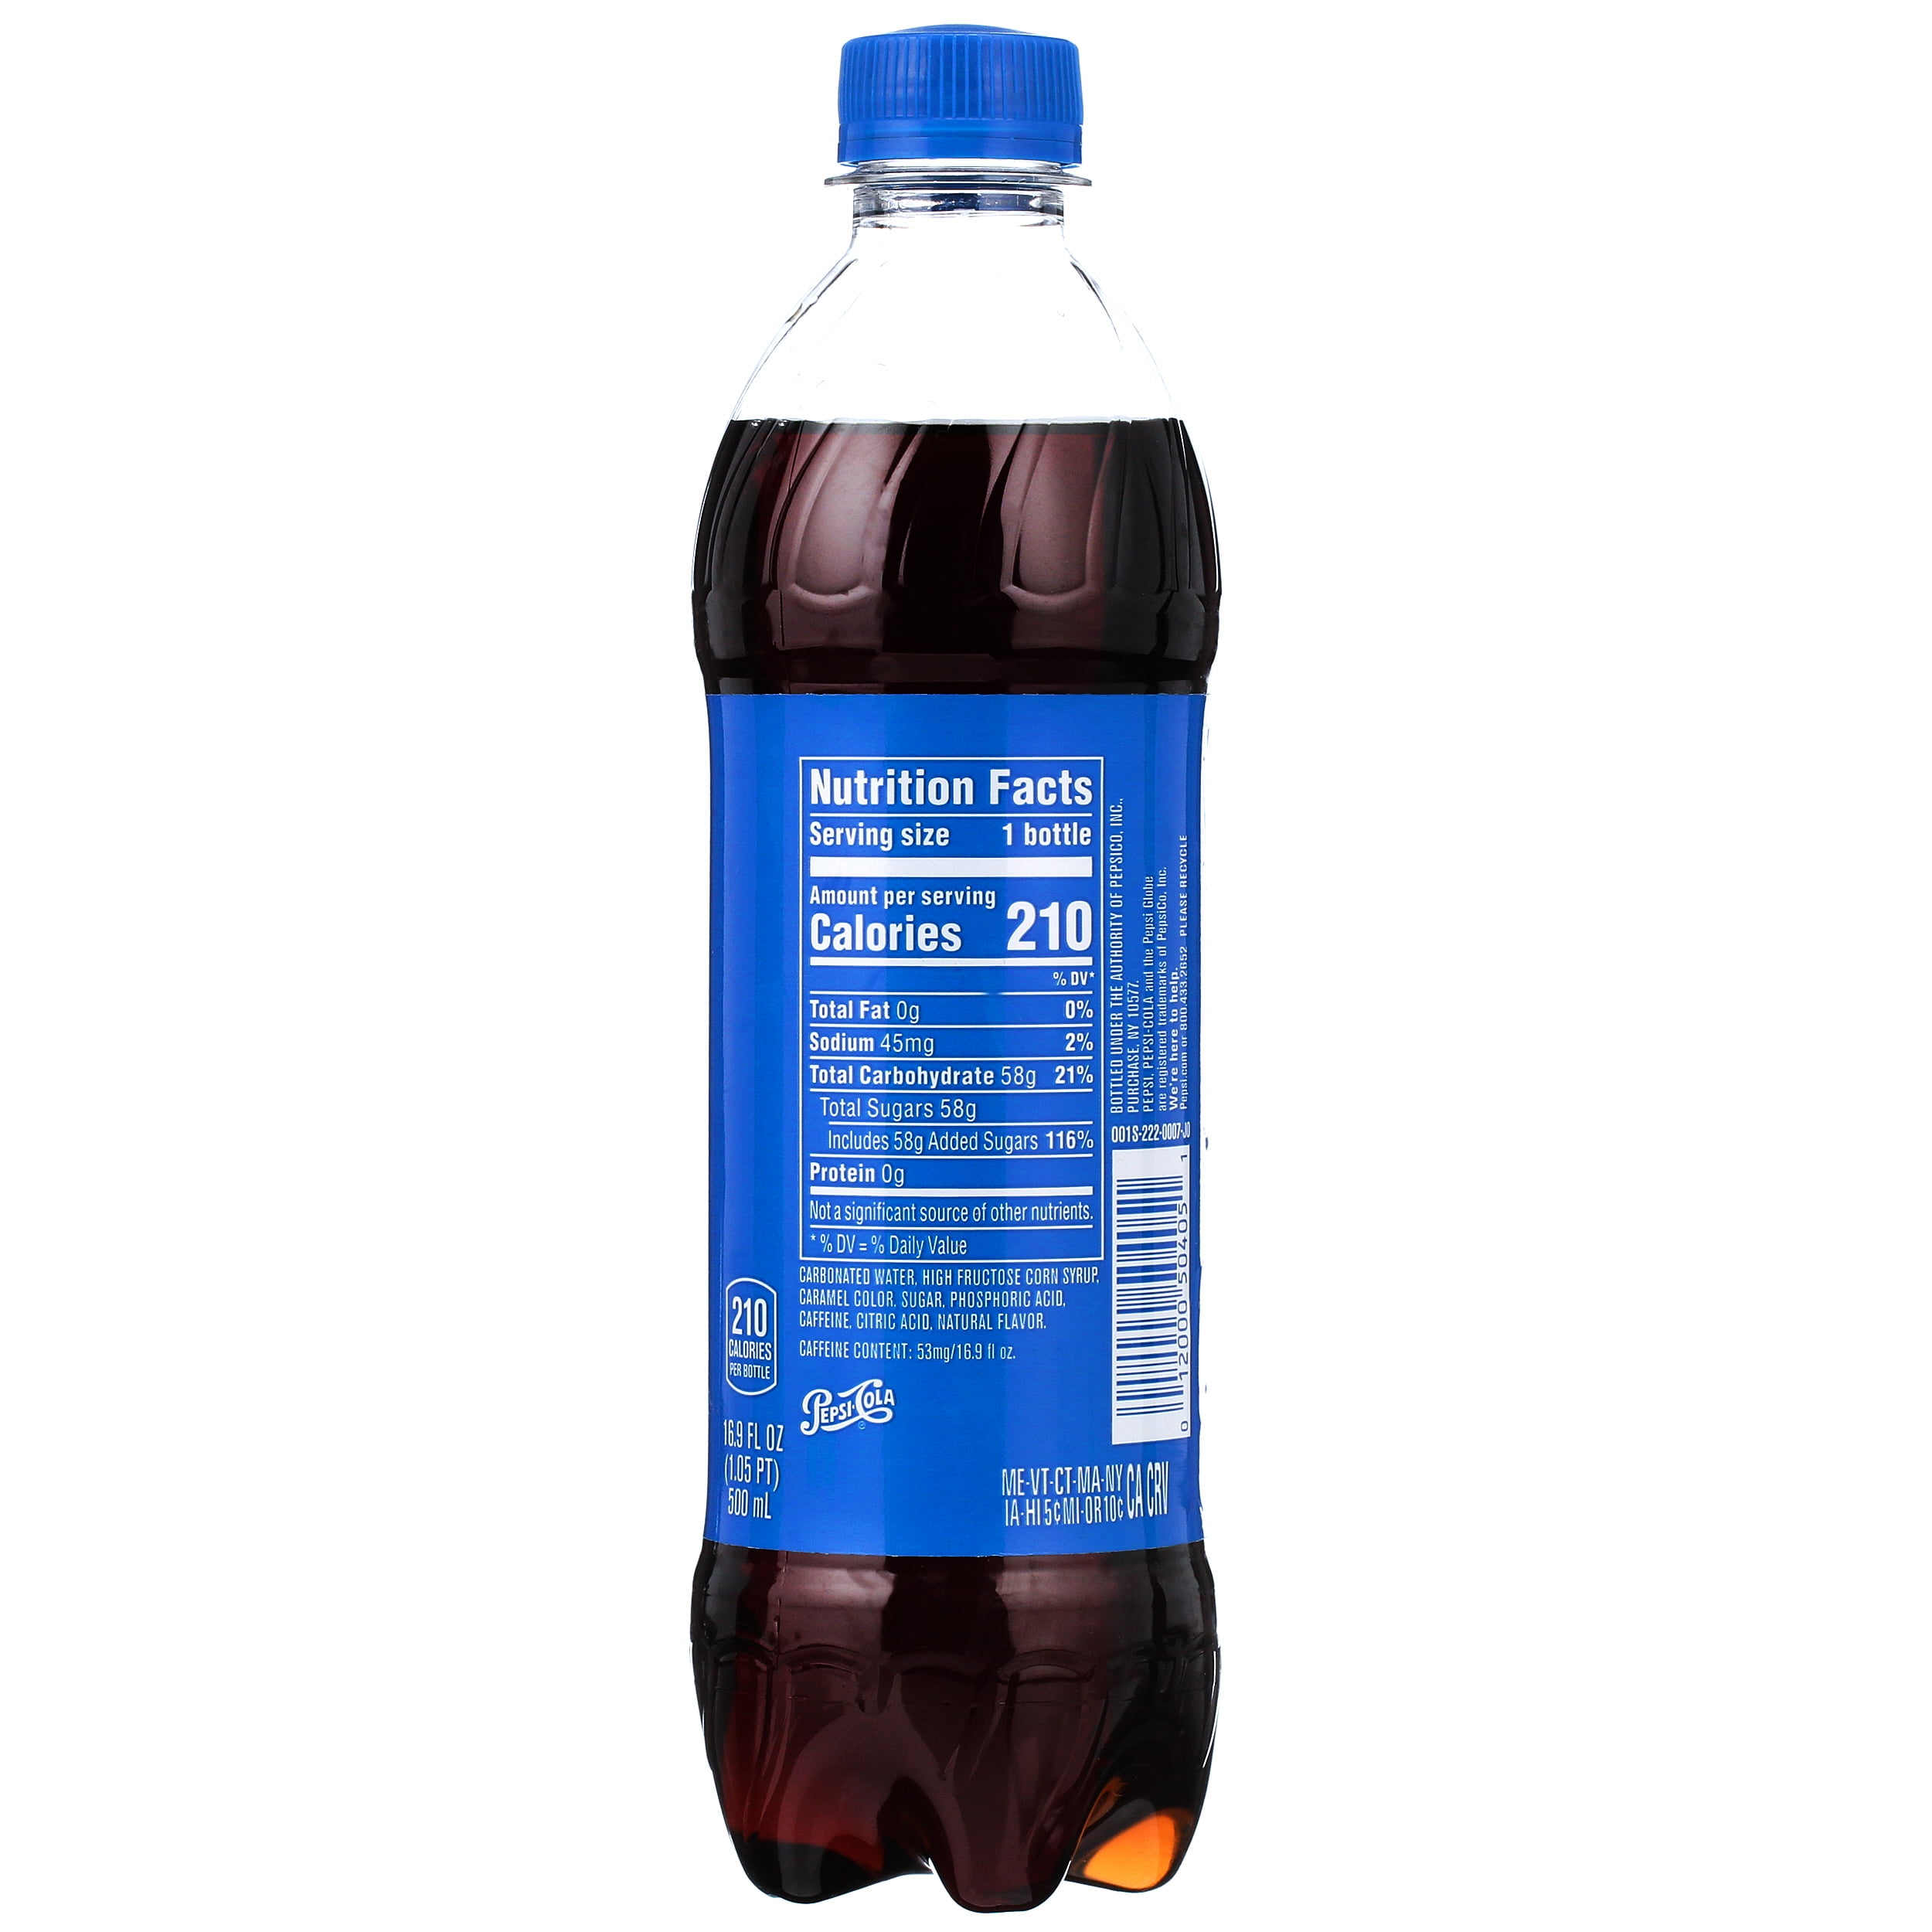 16 Oz Pepsi Bottle Nutrition Facts - Best Pictures and Decription ...